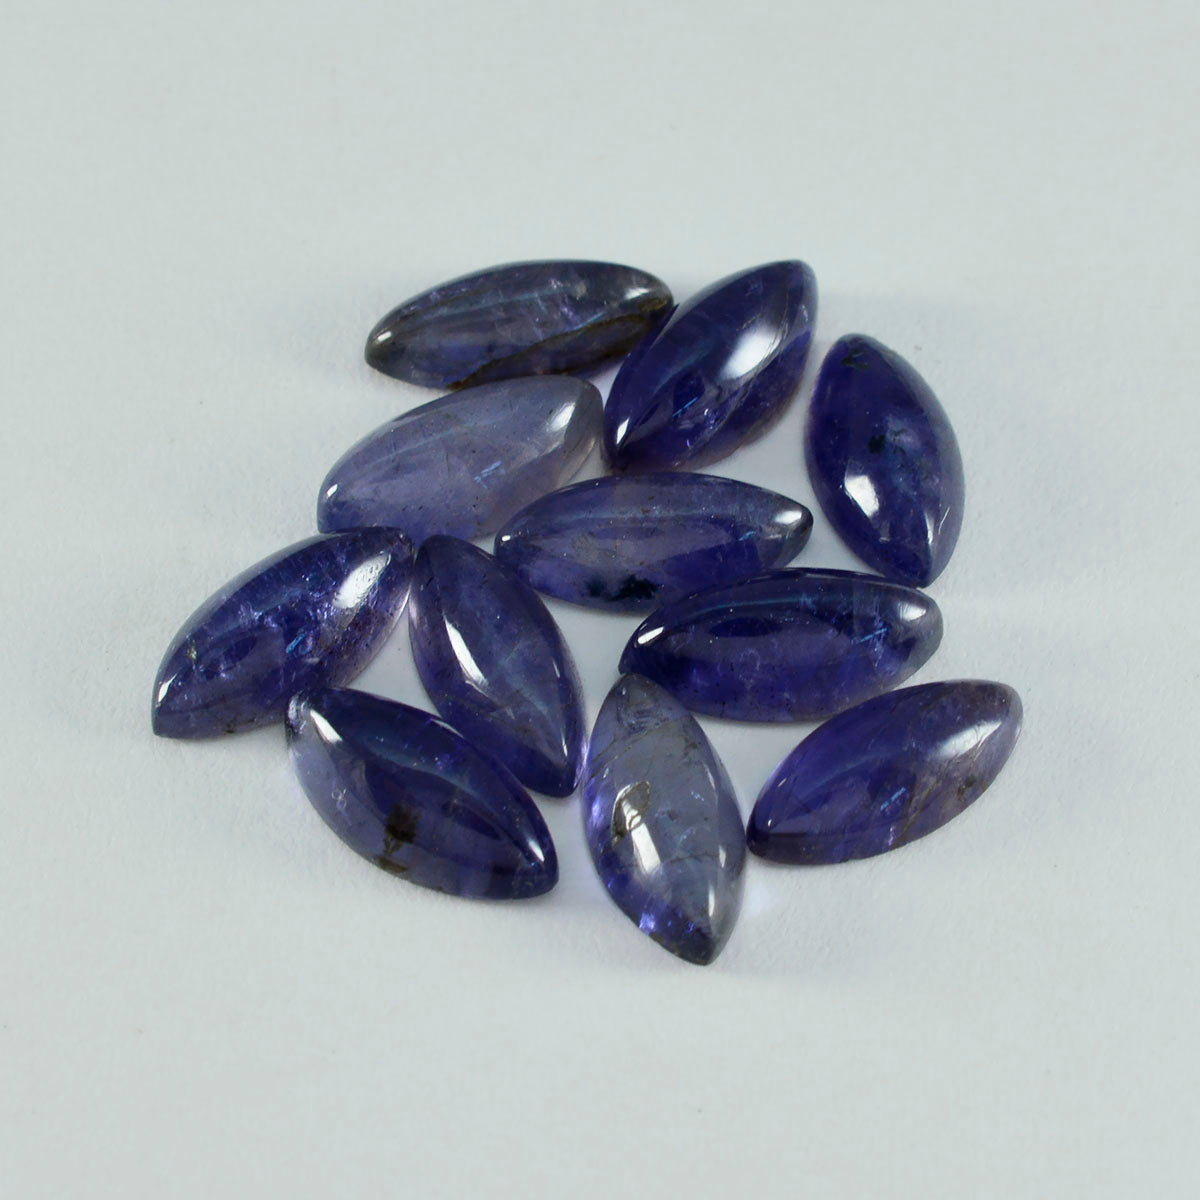 Riyogems 1PC Blue Iolite Cabochon 8x16 mm Marquise Shape pretty Quality Loose Stone